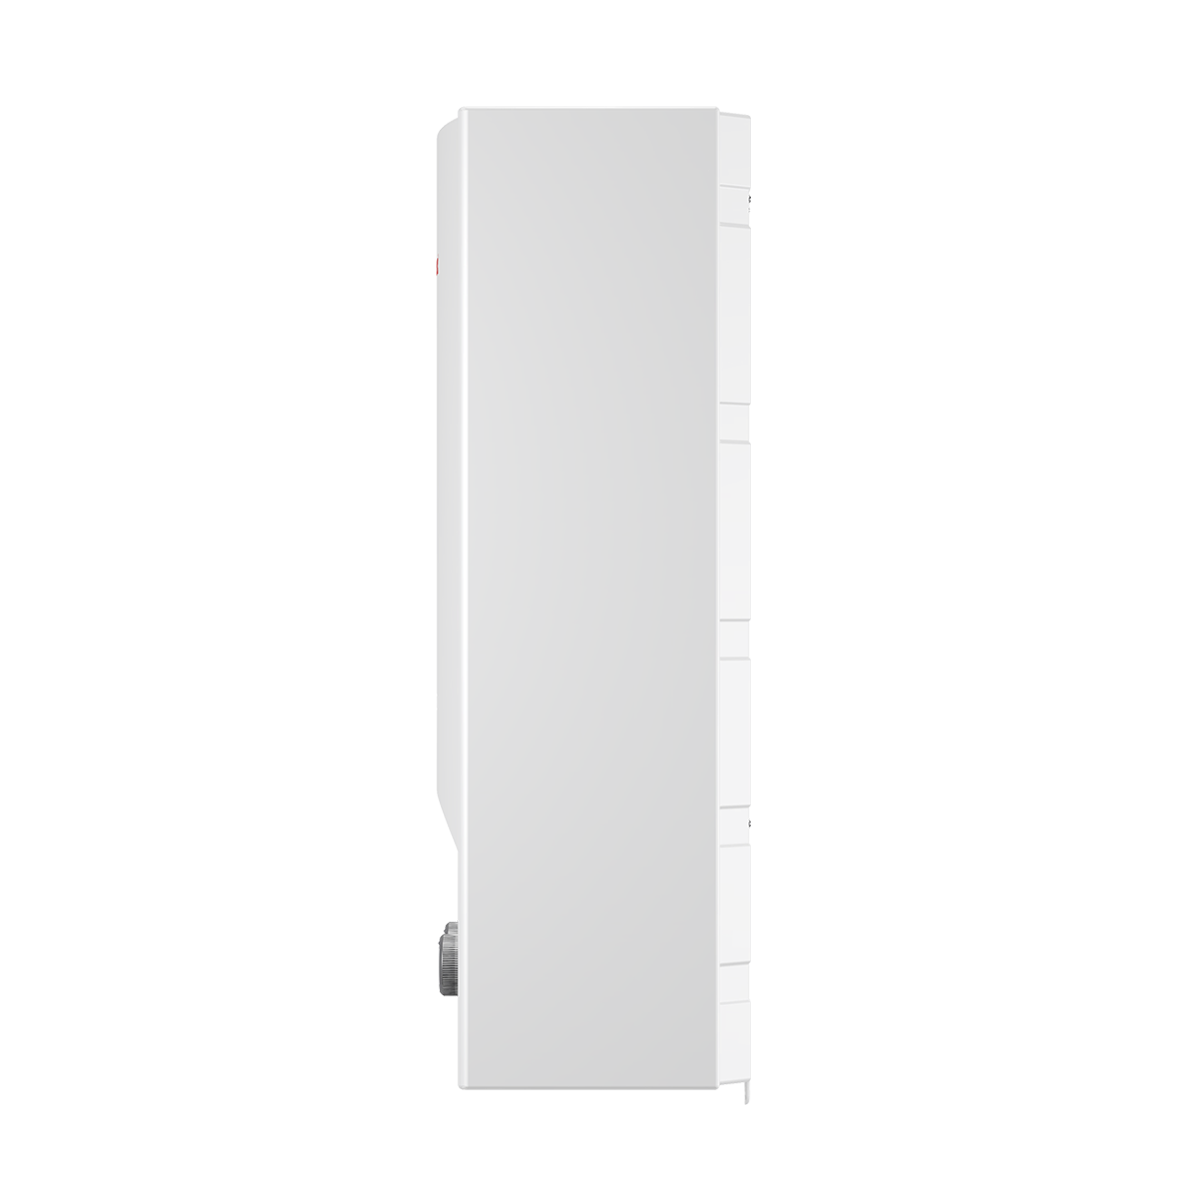 Водонагреватель газовый проточный бытовой THERMEX G 20 D (Pearl white)